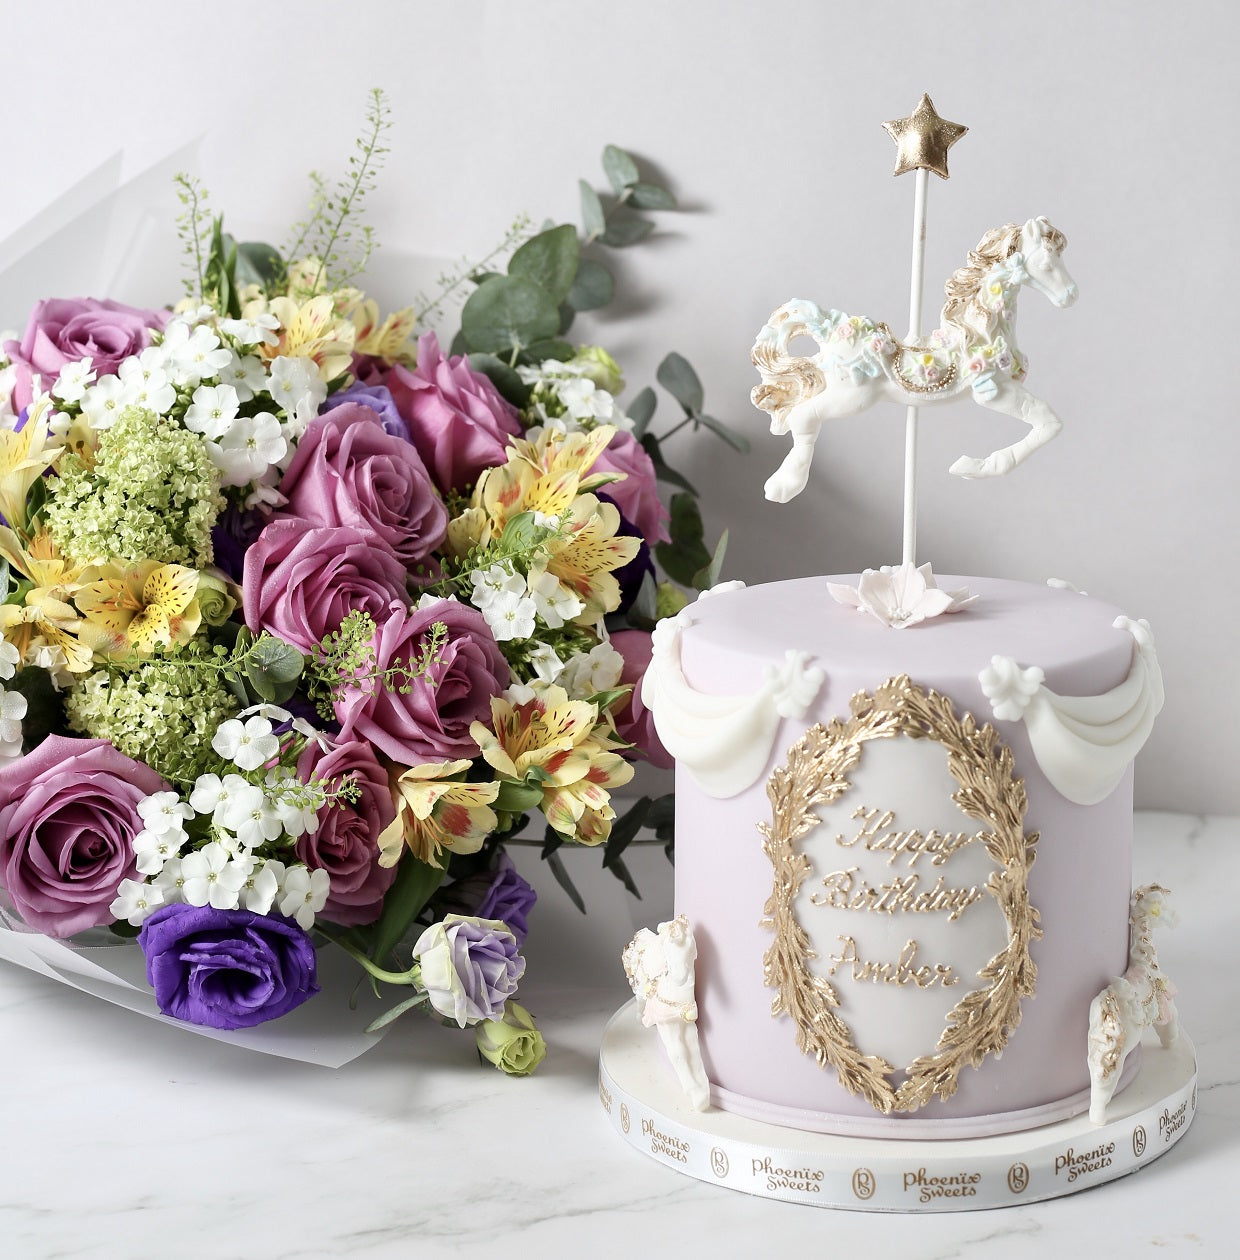 [h.f.flora x Phoenix Sweets] Bouquet & cake combo $2680